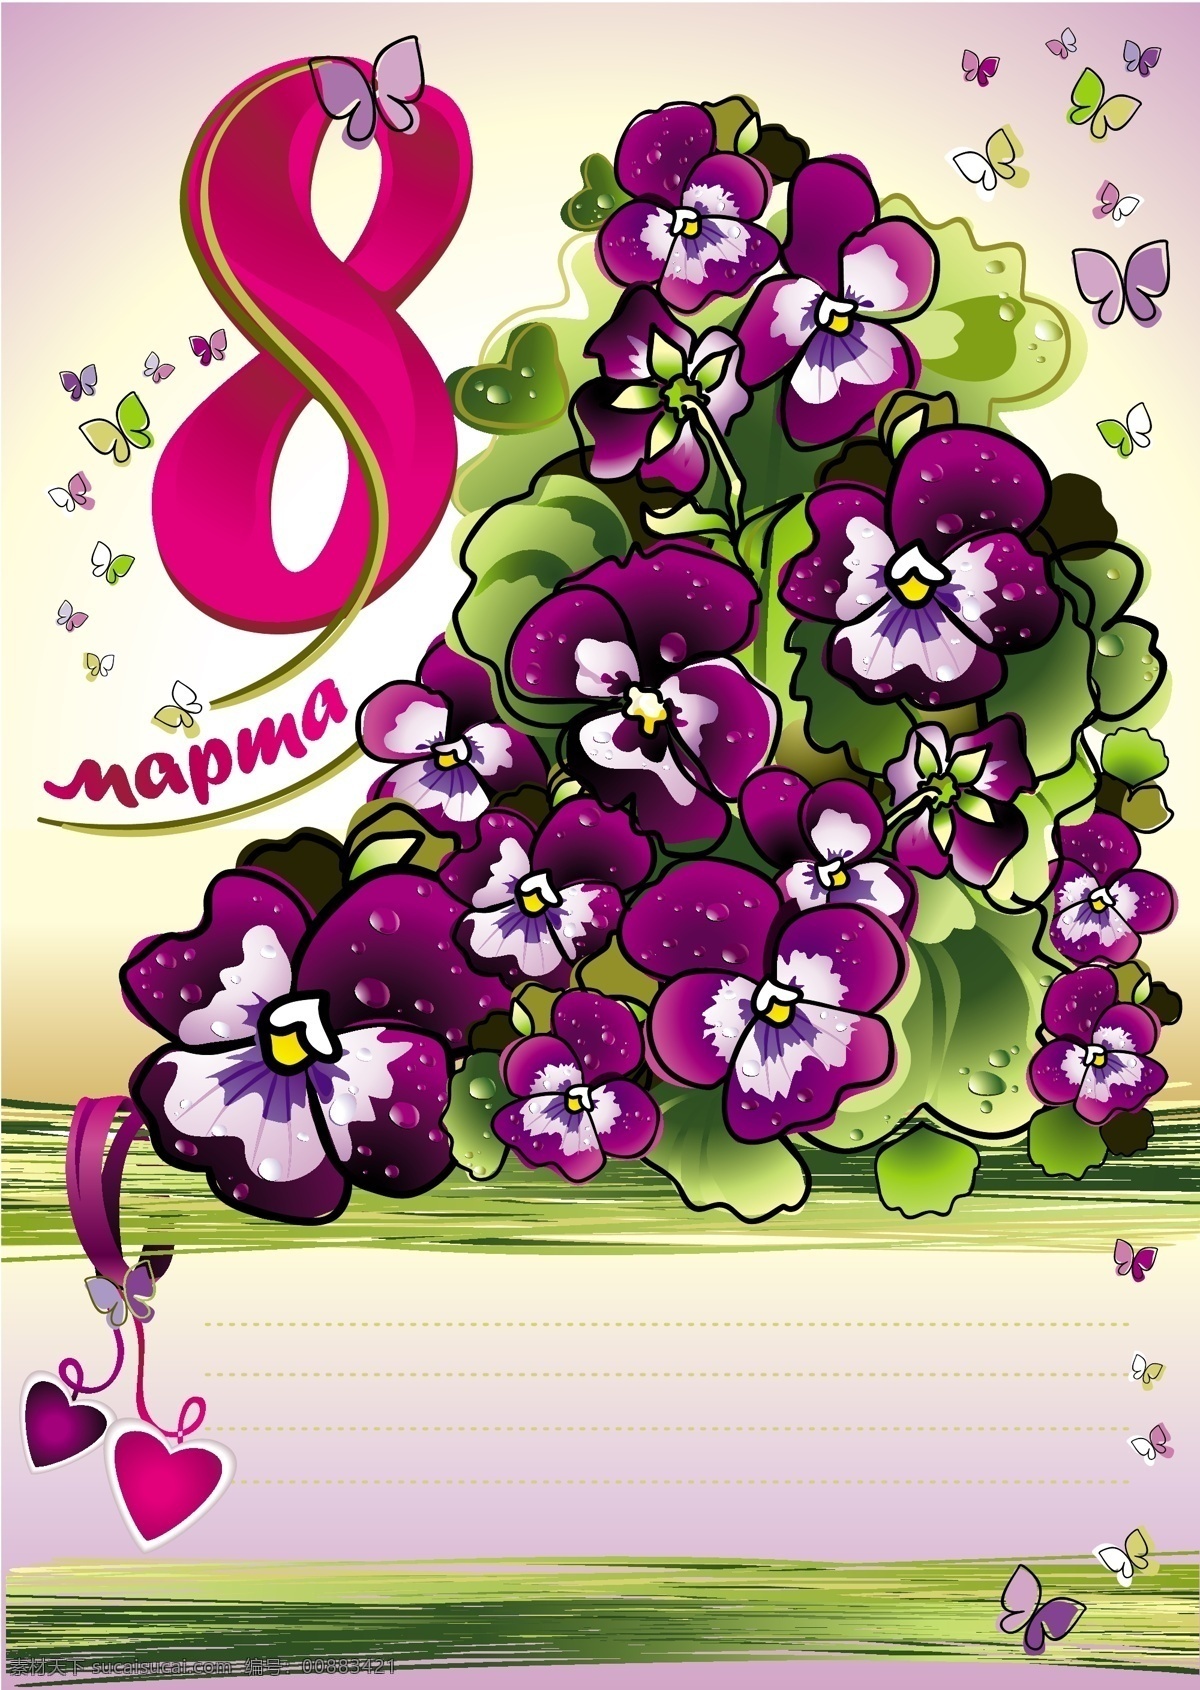 三月 八日 mapma 紫色 花朵 矢量 3月 蝴蝶 花卉 三八妇女节 第八 妇女节 快乐 花 矢量图 其他矢量图